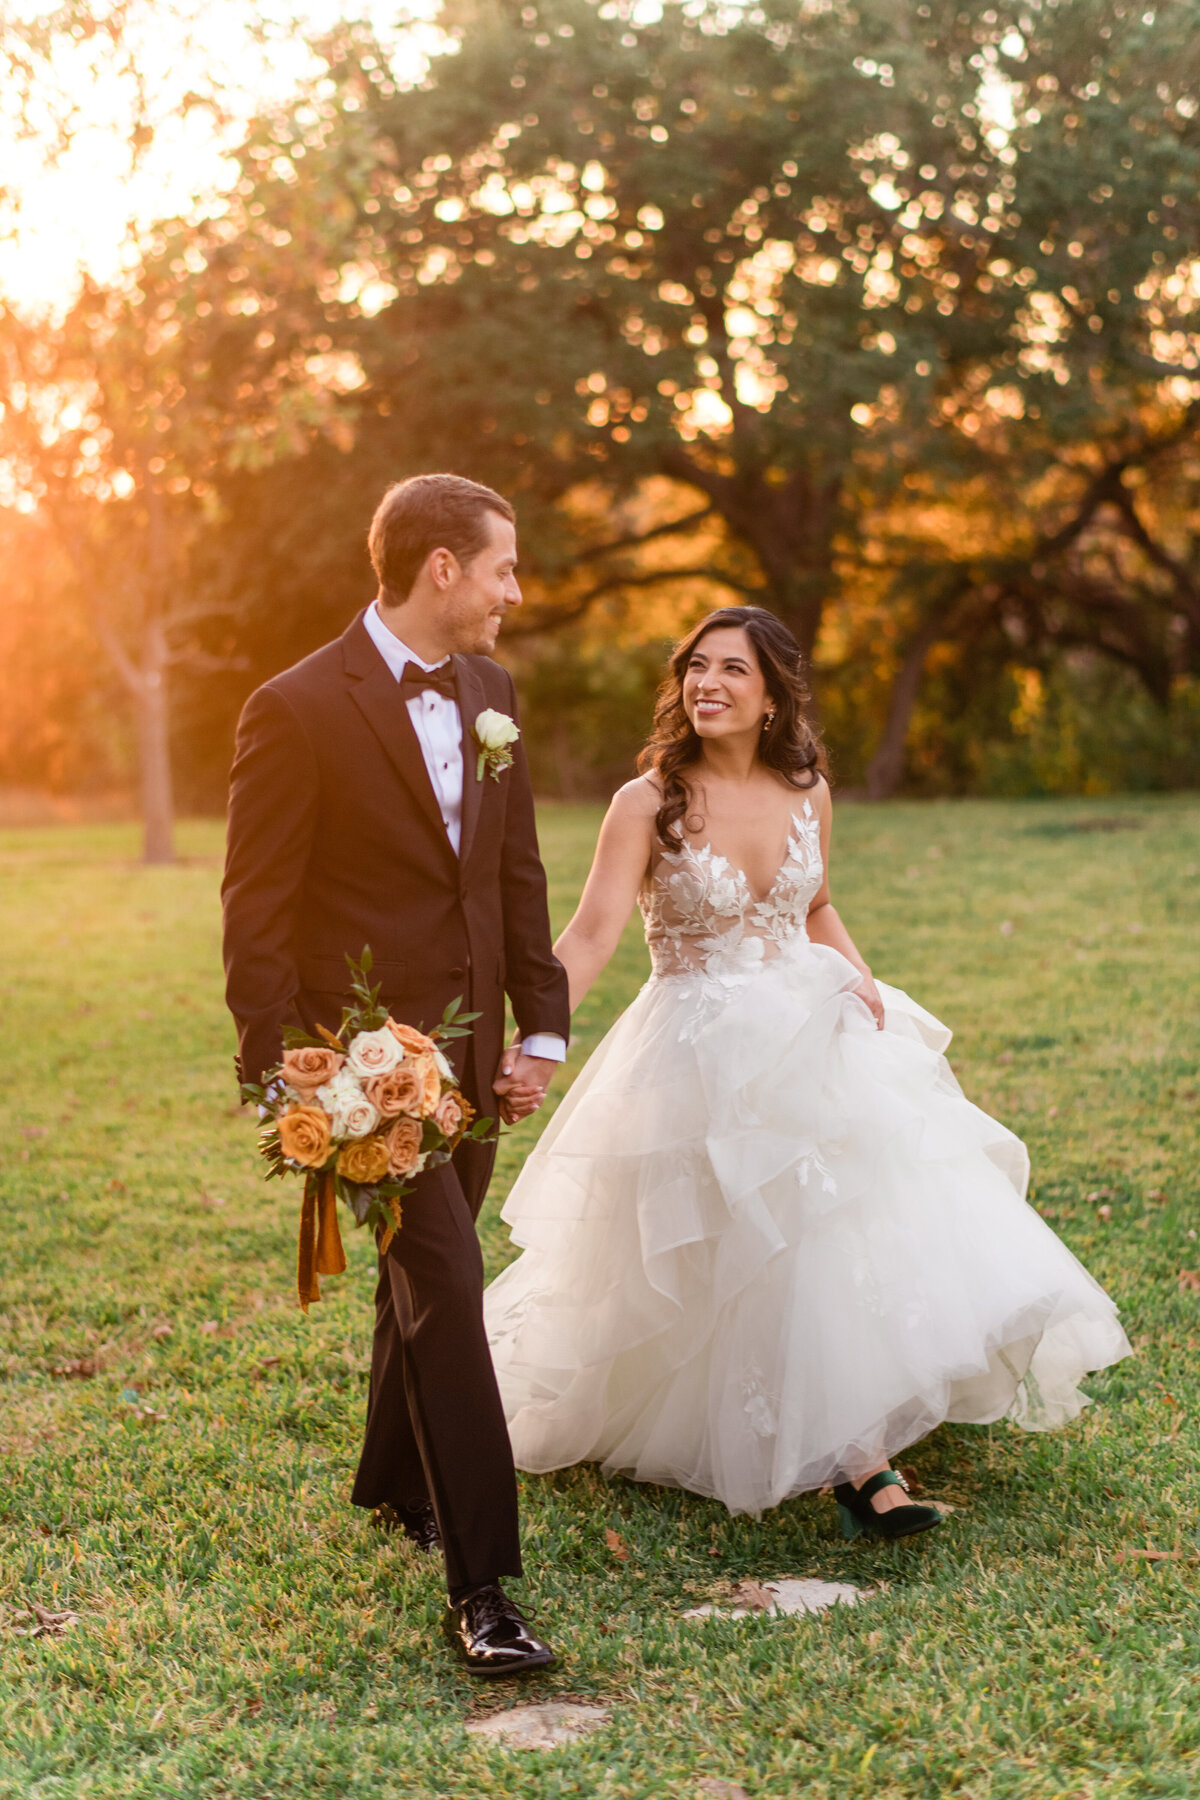 Ileana&Paul-WeddingHighlights-MilestoneGeorgetown-AprilMaeCreative-AustinWeddingPhotographer-Austin,Texas-289